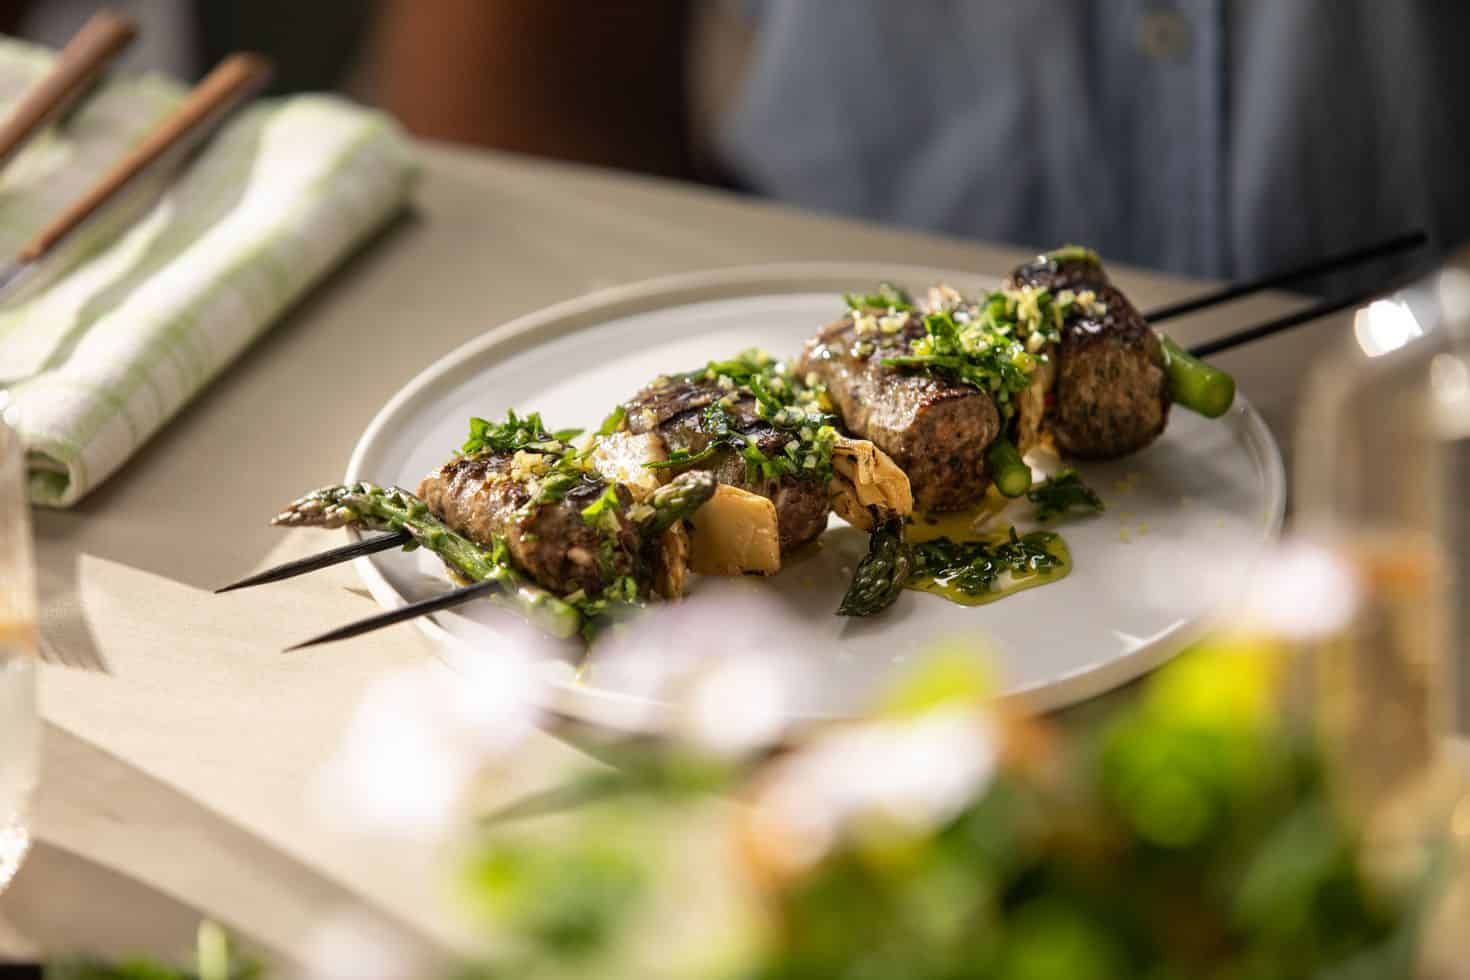 רשת טיב טעם חולקת מתכון לשיפודי קבב עם ירקות בליווי סלסה צילום דניאל לילה